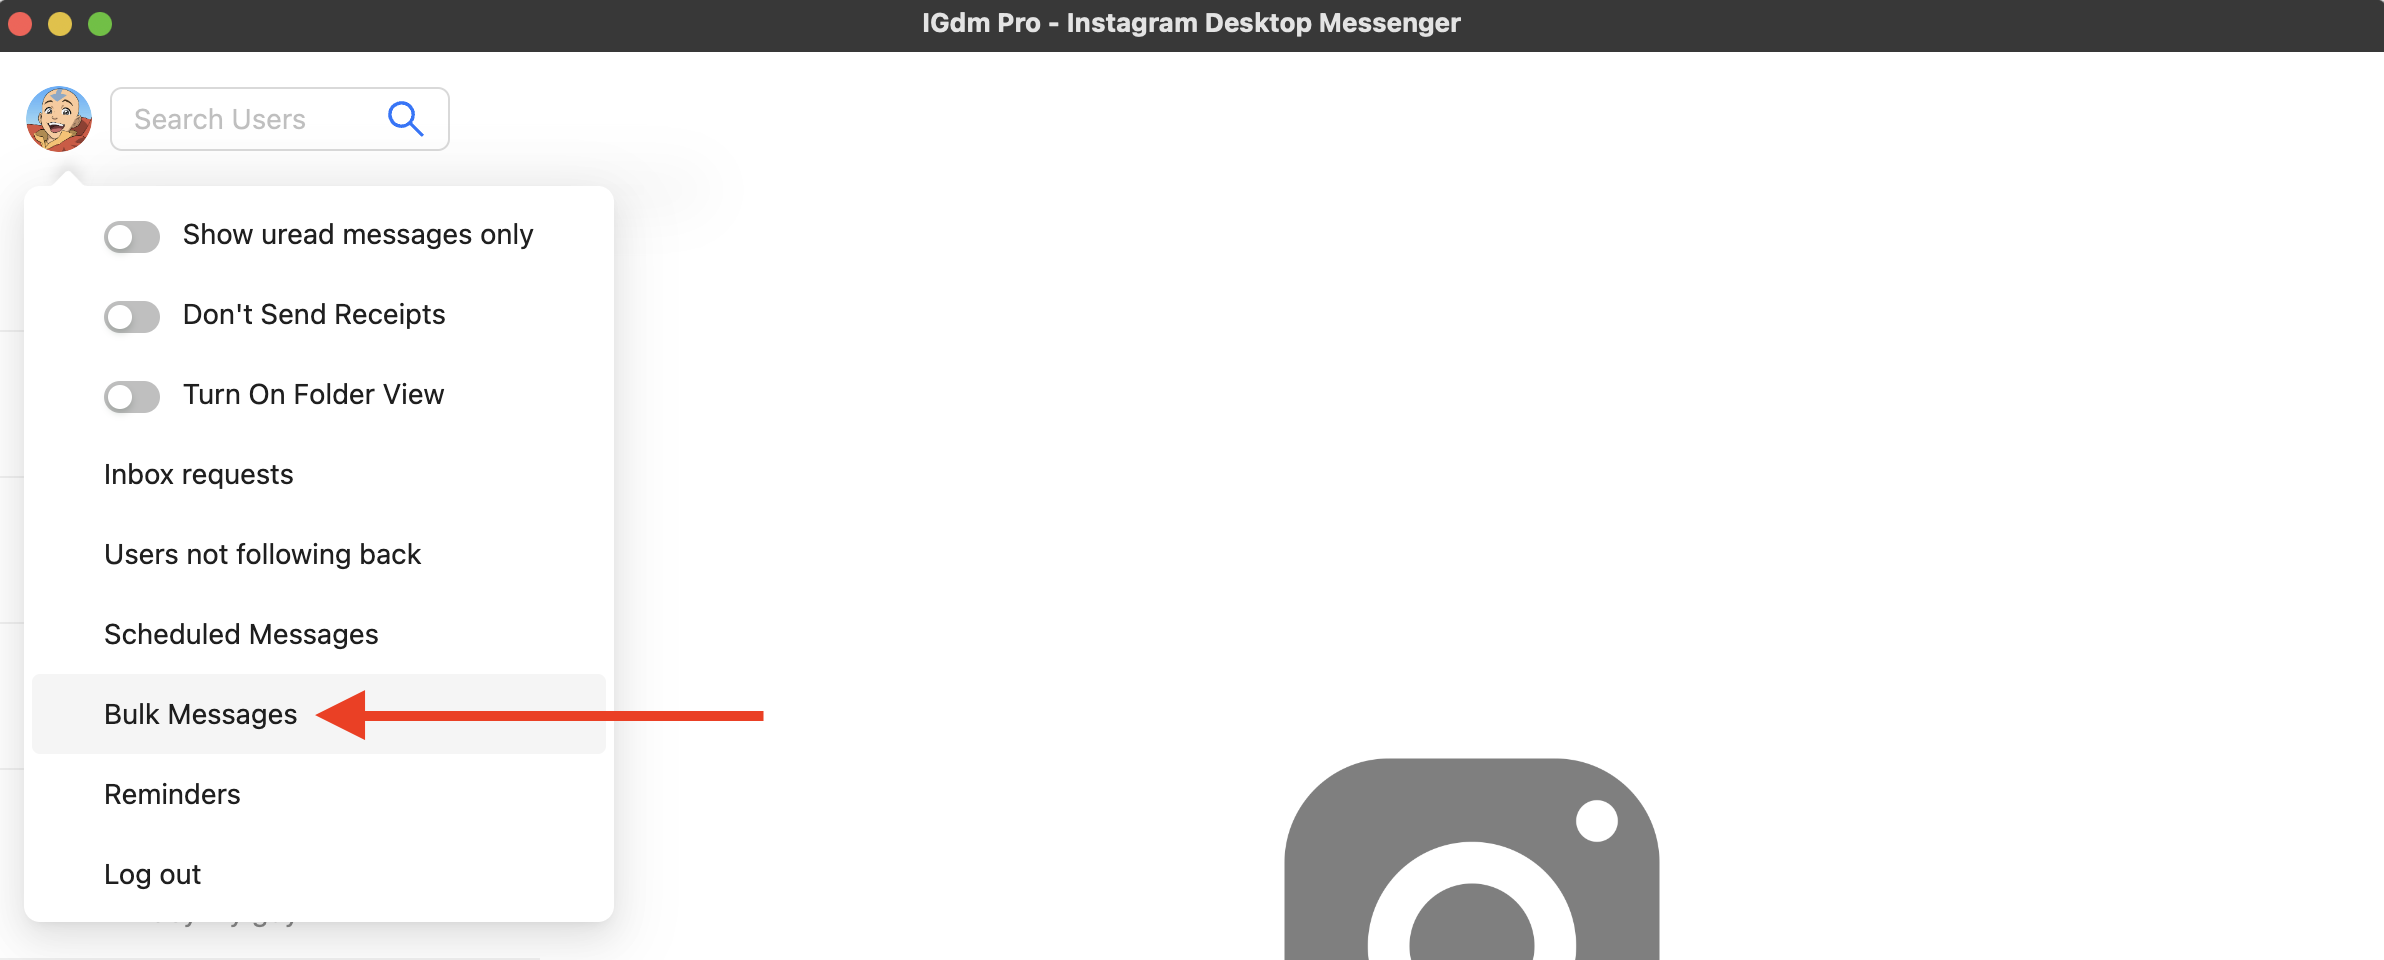 IGdm Pro avatar dropdown menu